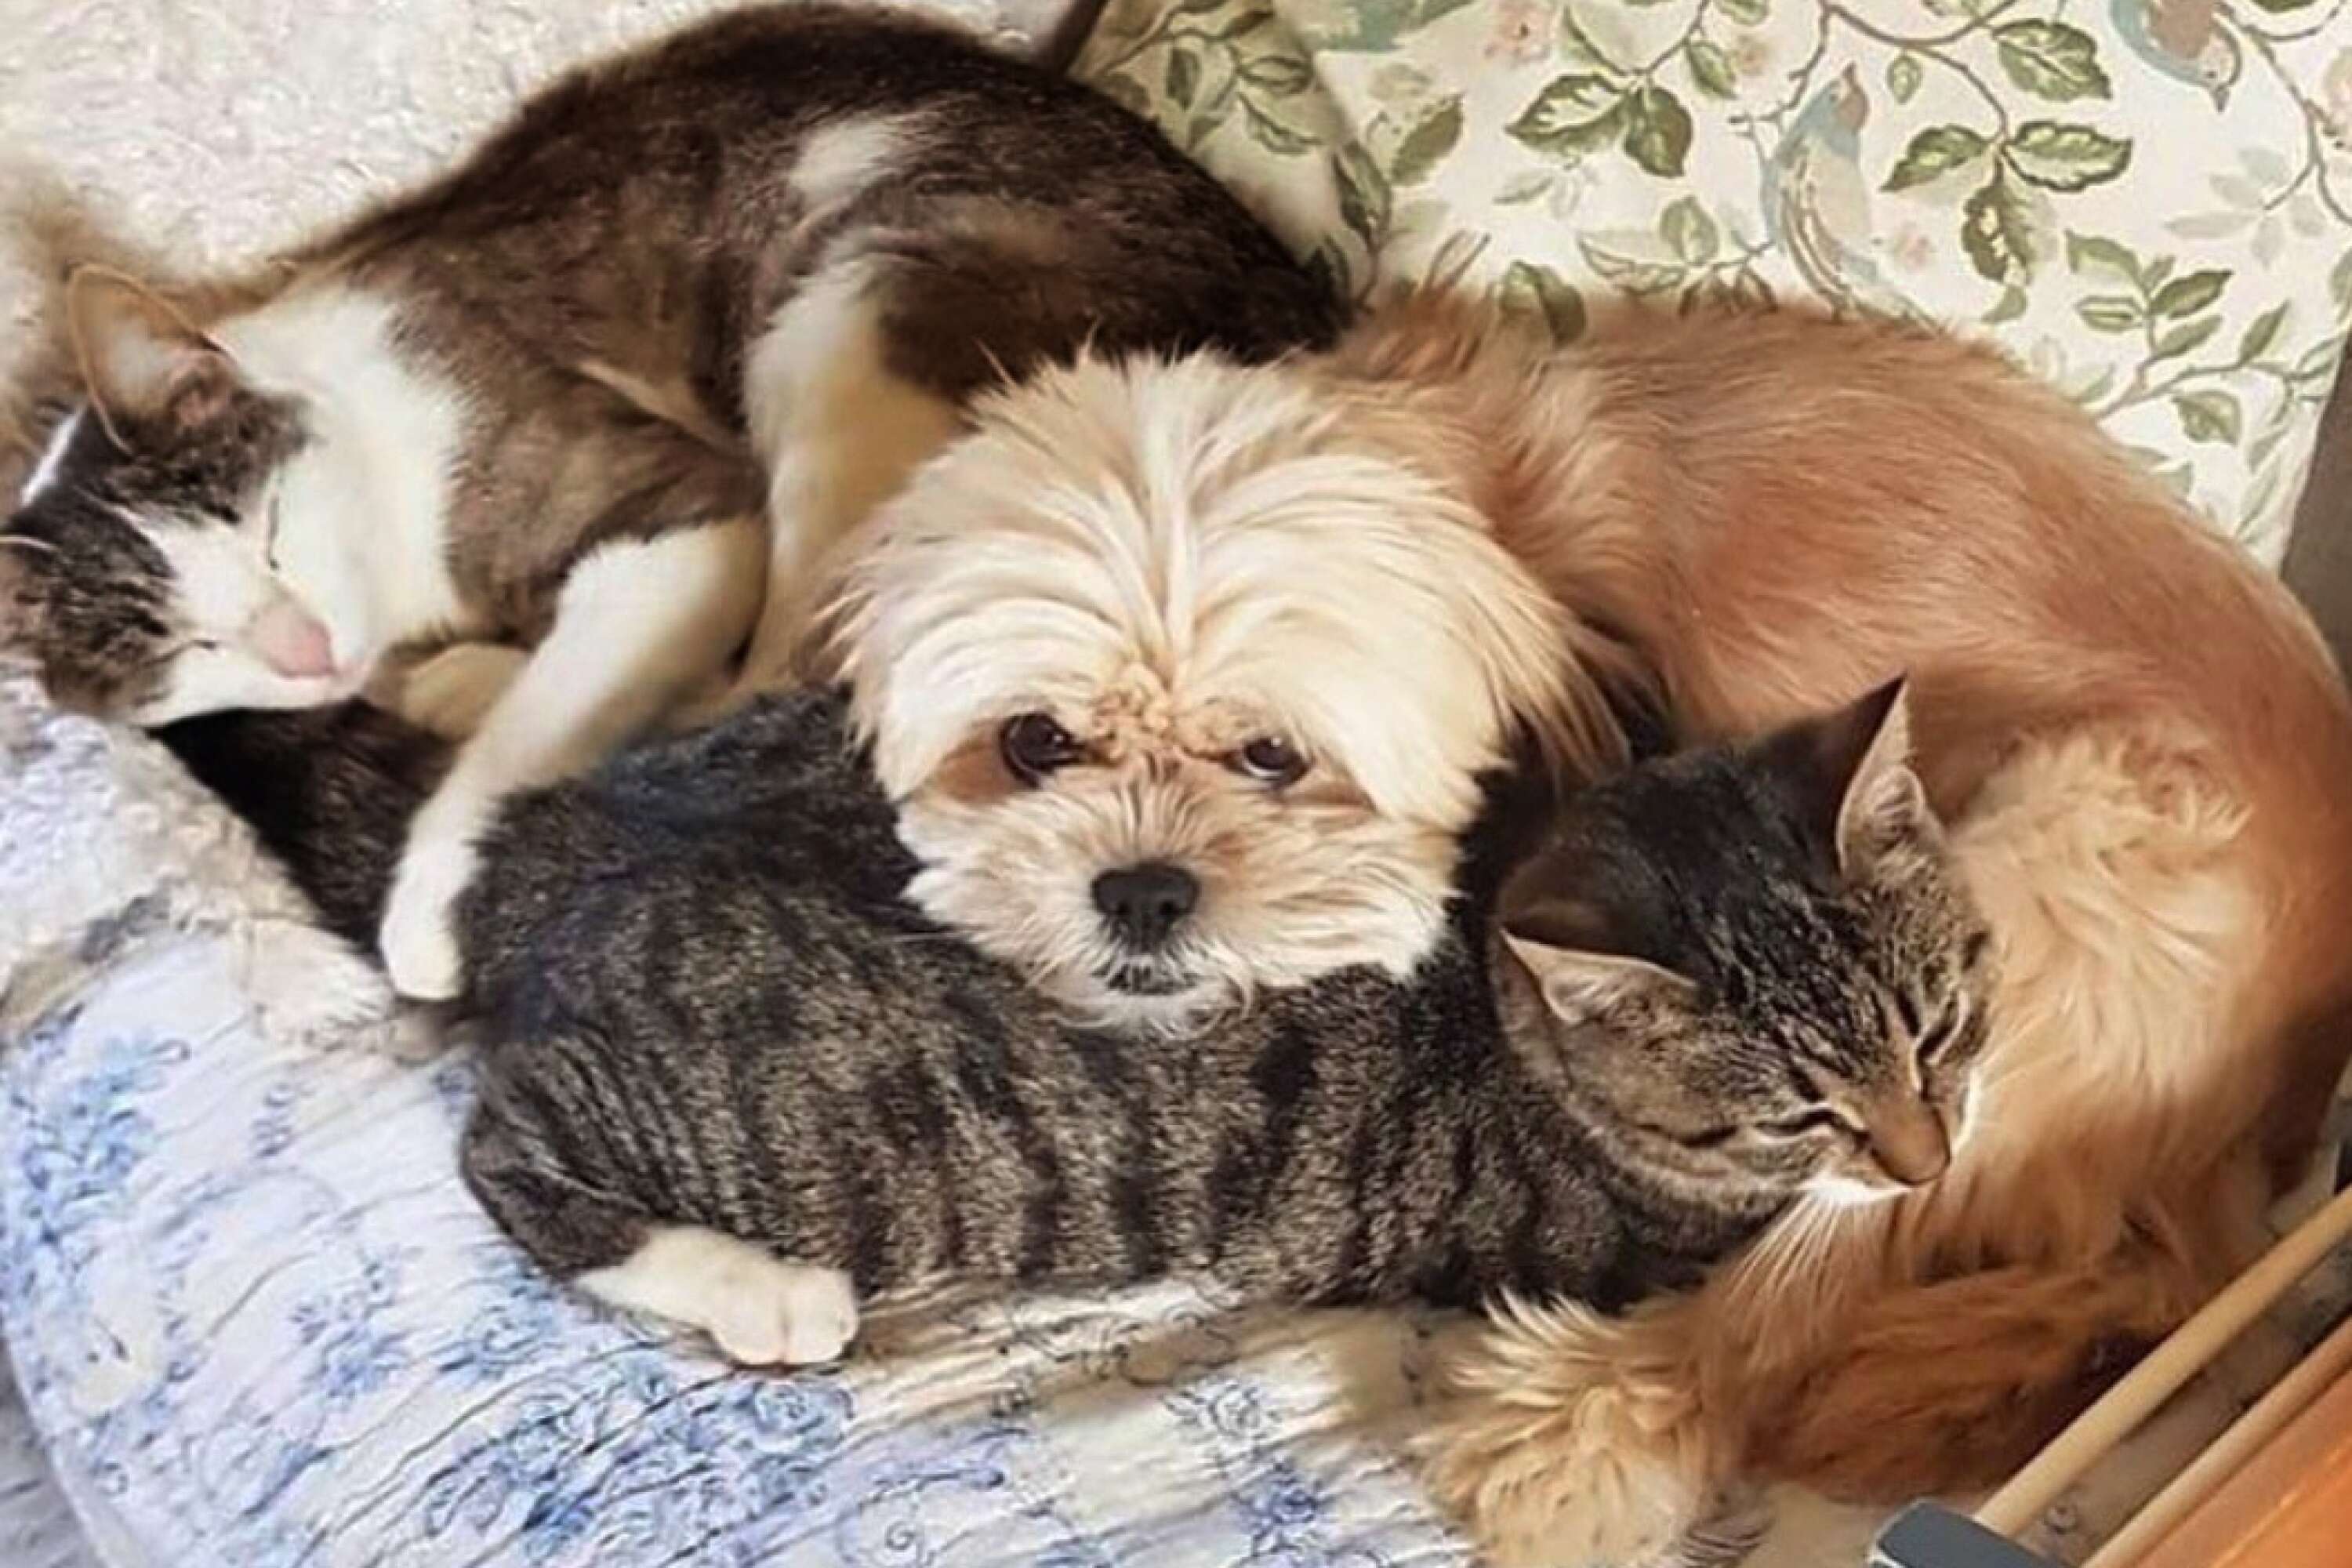 Mamma Gry och kattungen My, och älskade hunden Märta. ”De brukade ligga så här i en hög och sova”, säger Evelyn Carlsson. ”Jag kan bara hoppas att de fick vara tillsammans, att de inte var ensamma...”